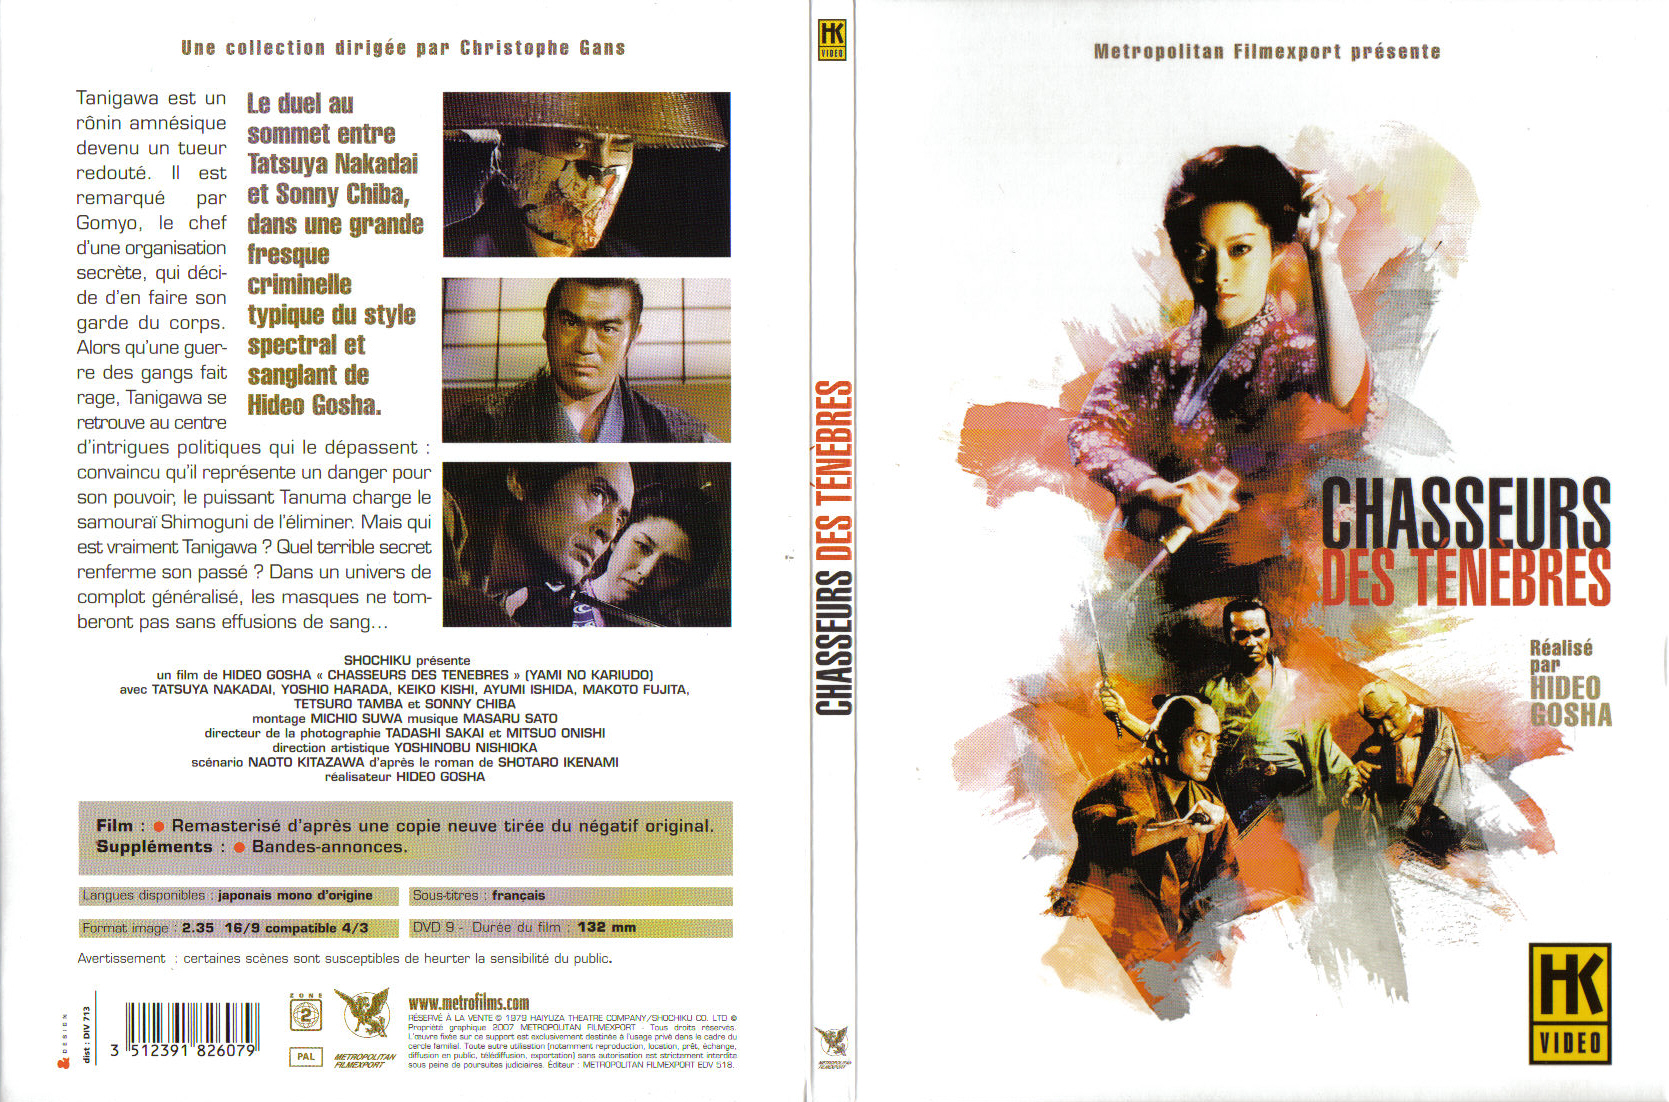 Jaquette DVD Chasseurs des tenebres (1979)